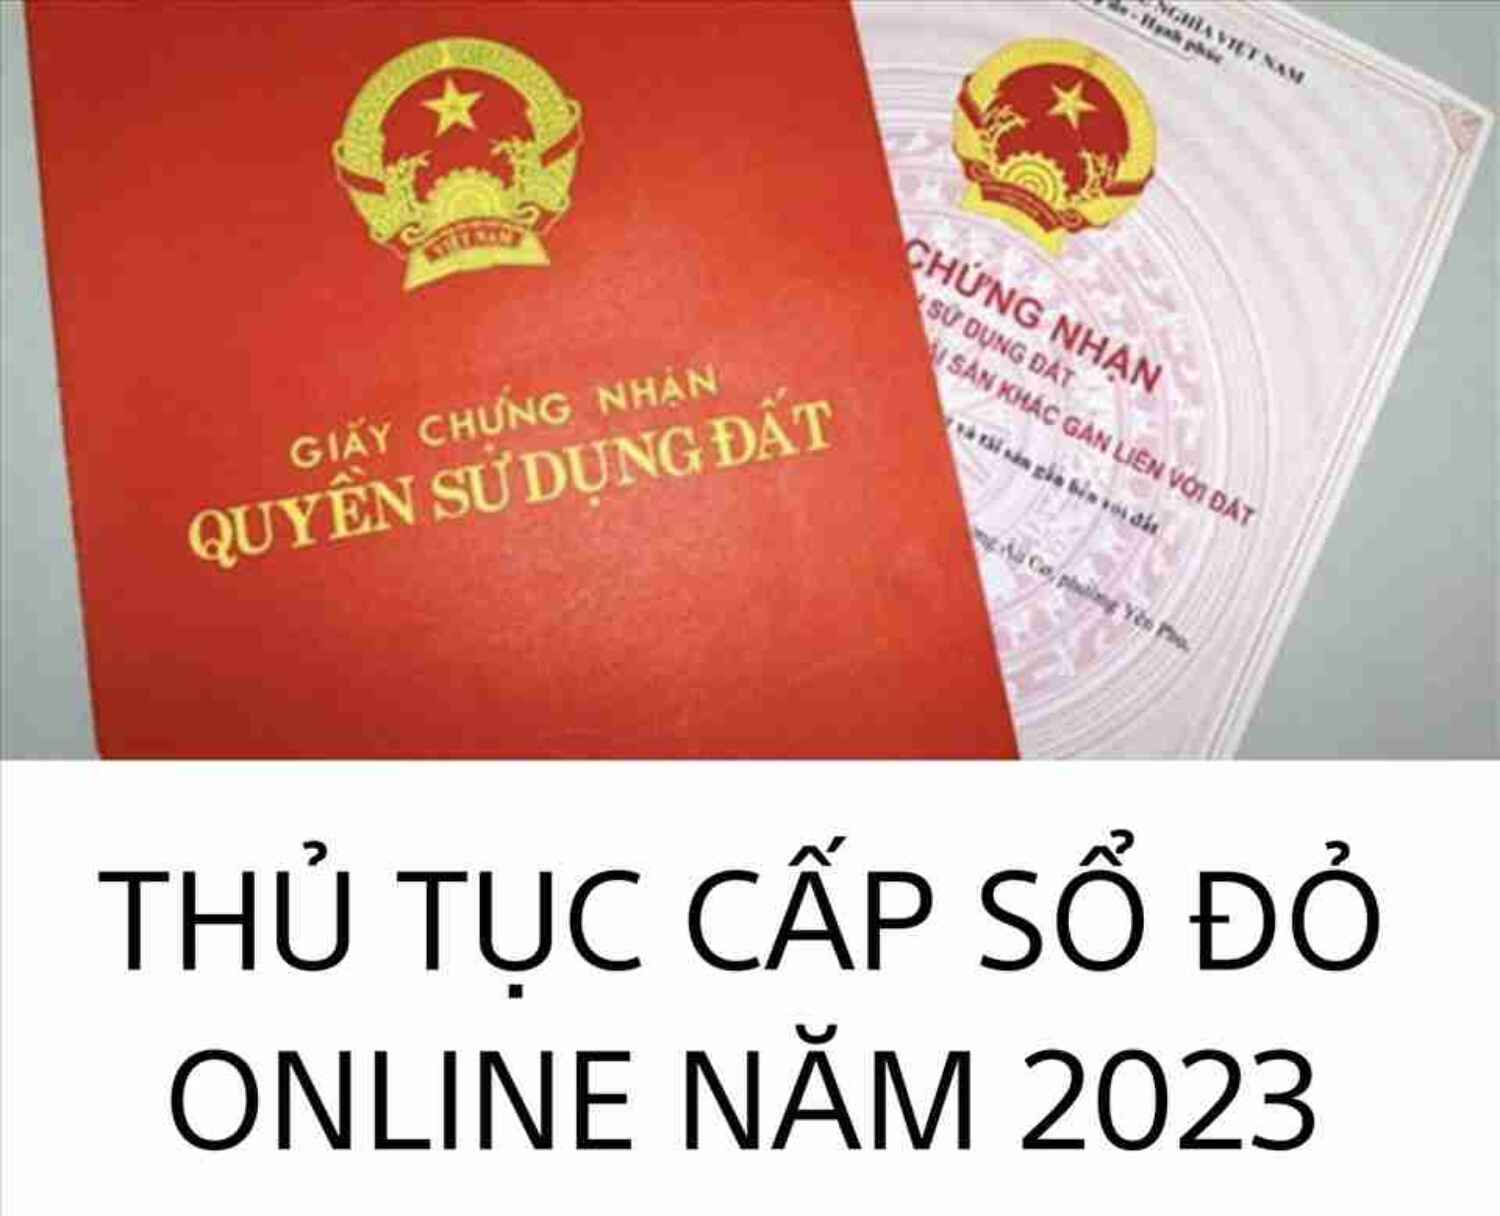 Thông Tin Mới Về Việc Cấp Sổ đỏ Online 2023